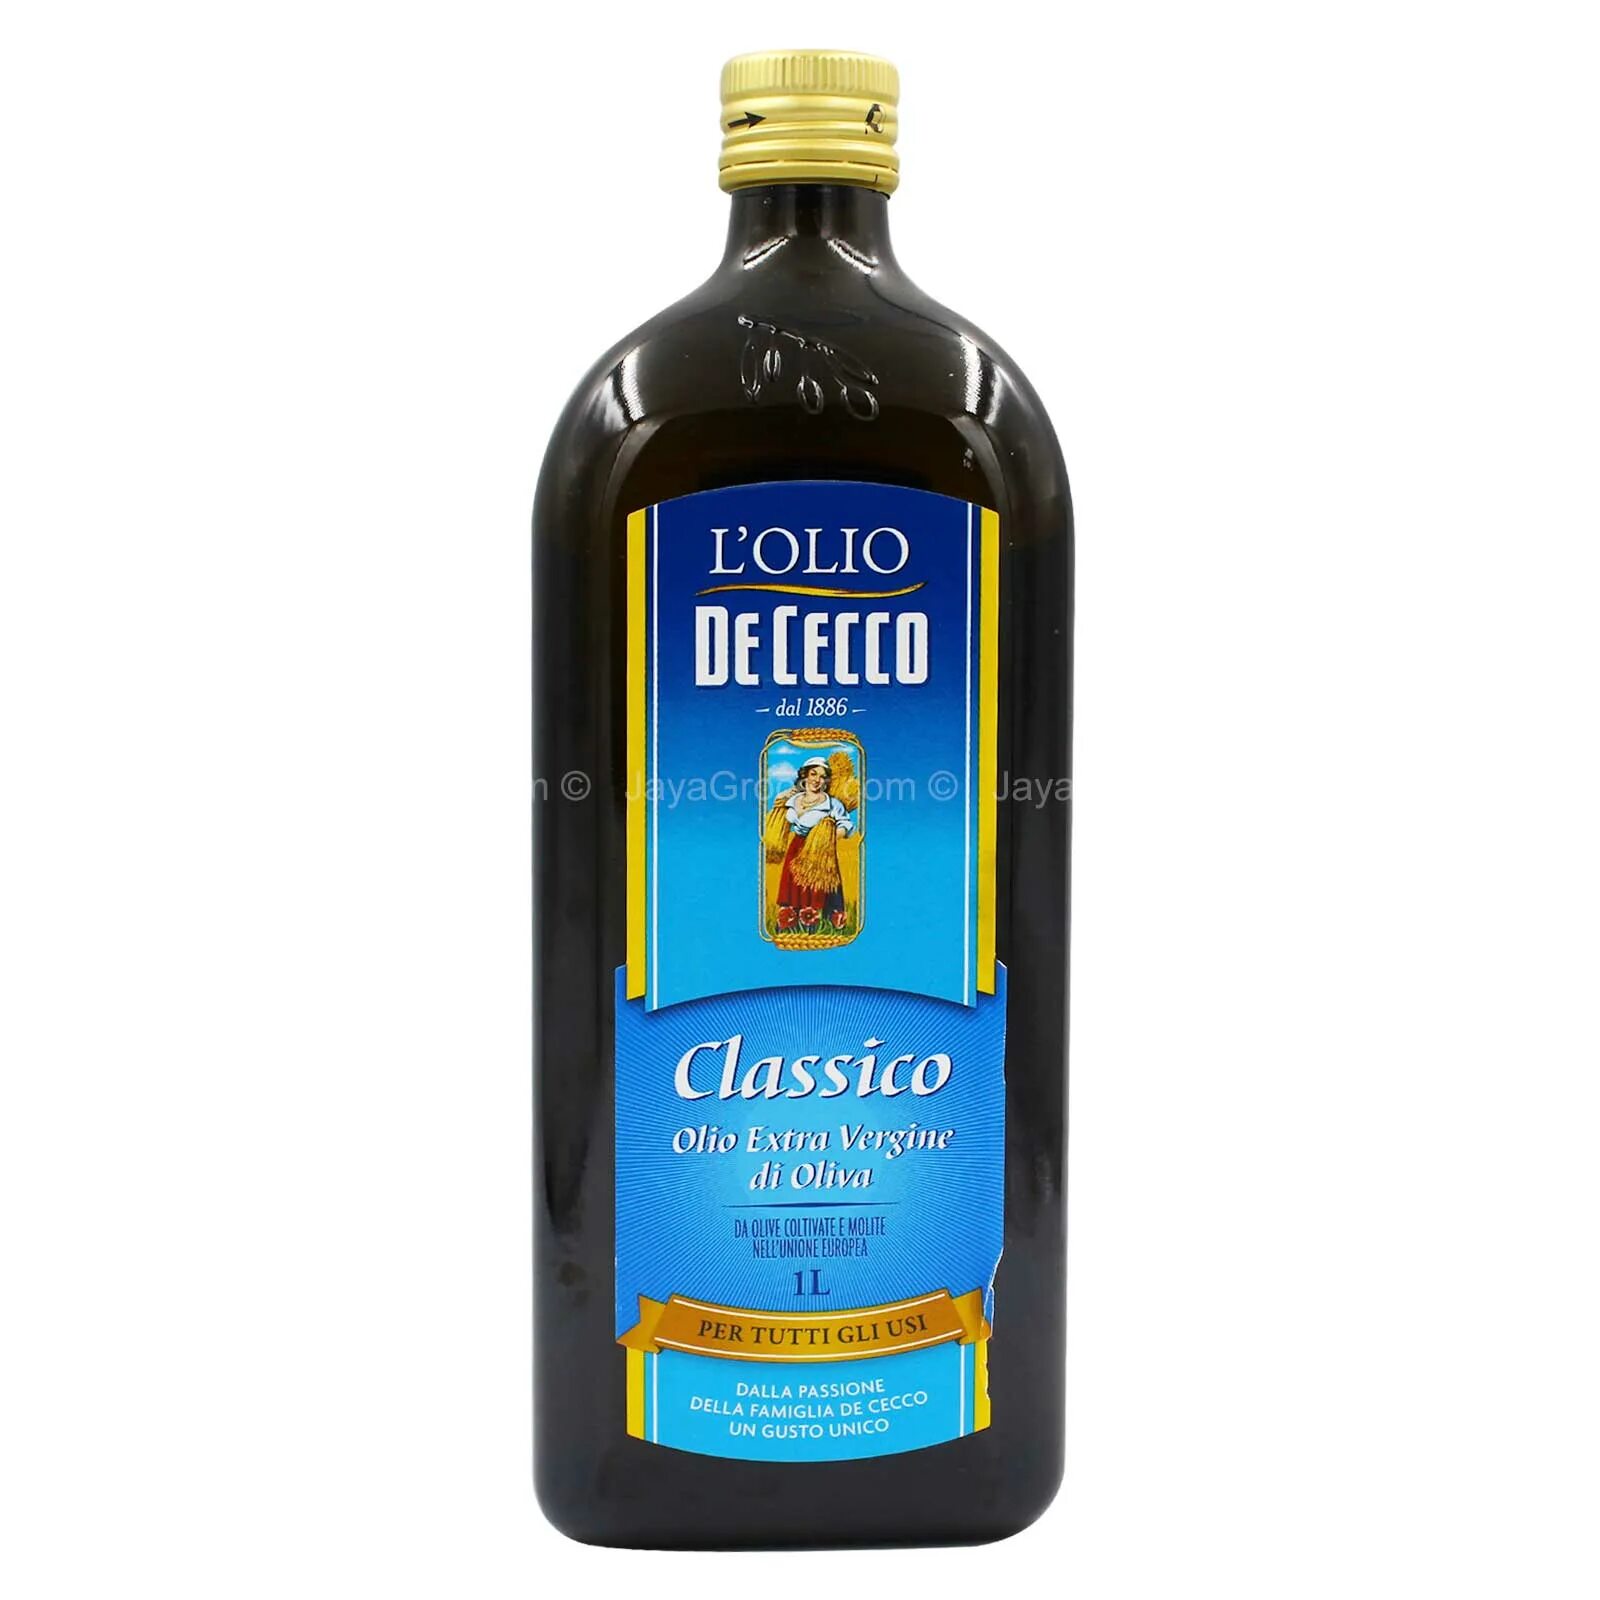 Масло de Cecco оливковое Classico Extra Virgin, 250мл. Масло оливковое de Cecco Extra Virgin 100%, 1л. Оливковое масло l olio de Cecco Classico. Масло оливковое синяя этикетка.